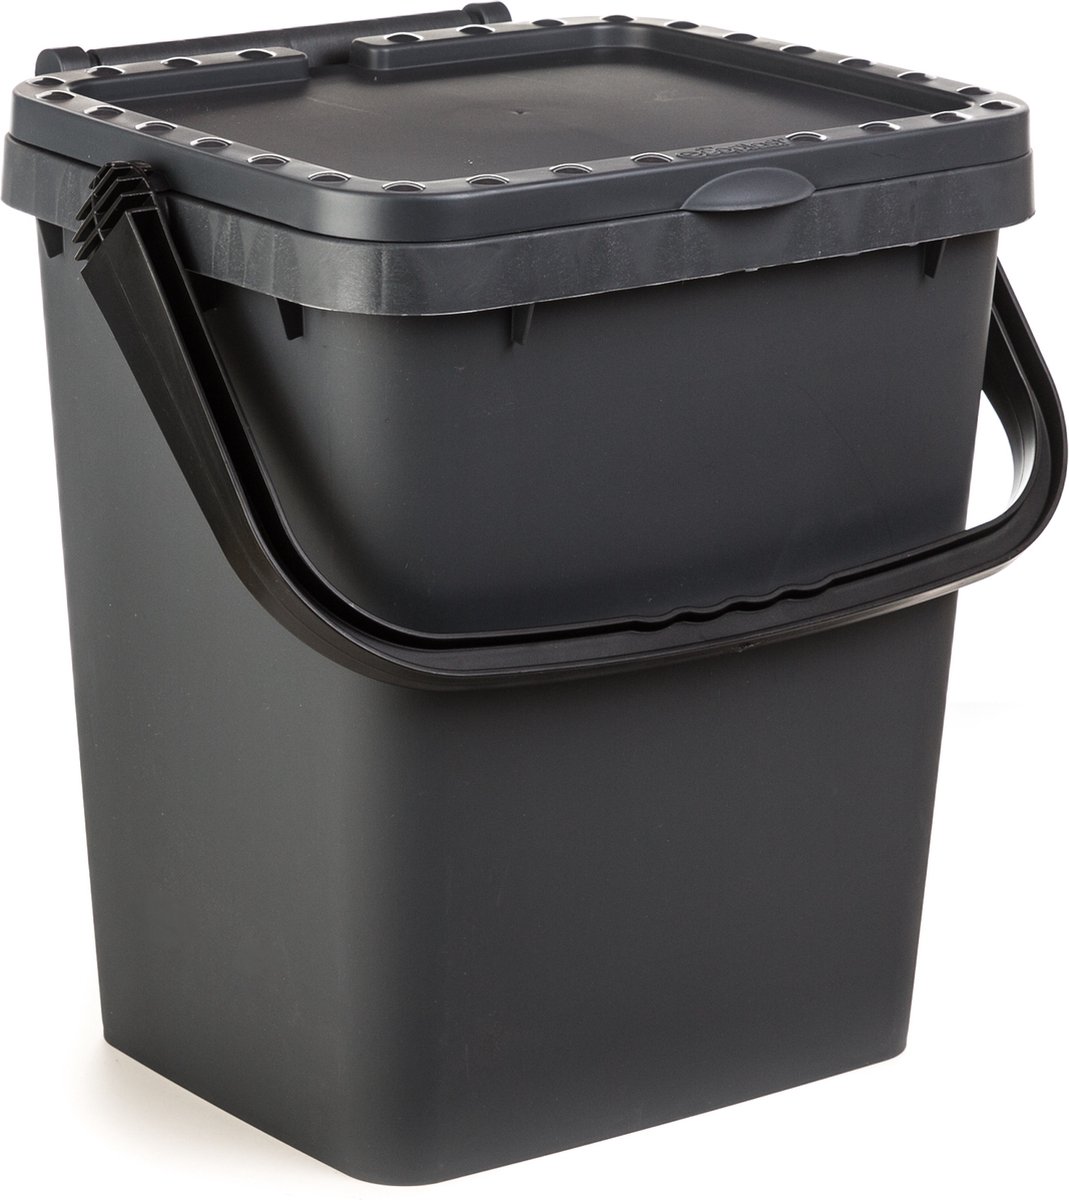 Ecoplus 35 liter afvalemmer grijs - afvalscheidingsbak - sorteerbak - afvalbak